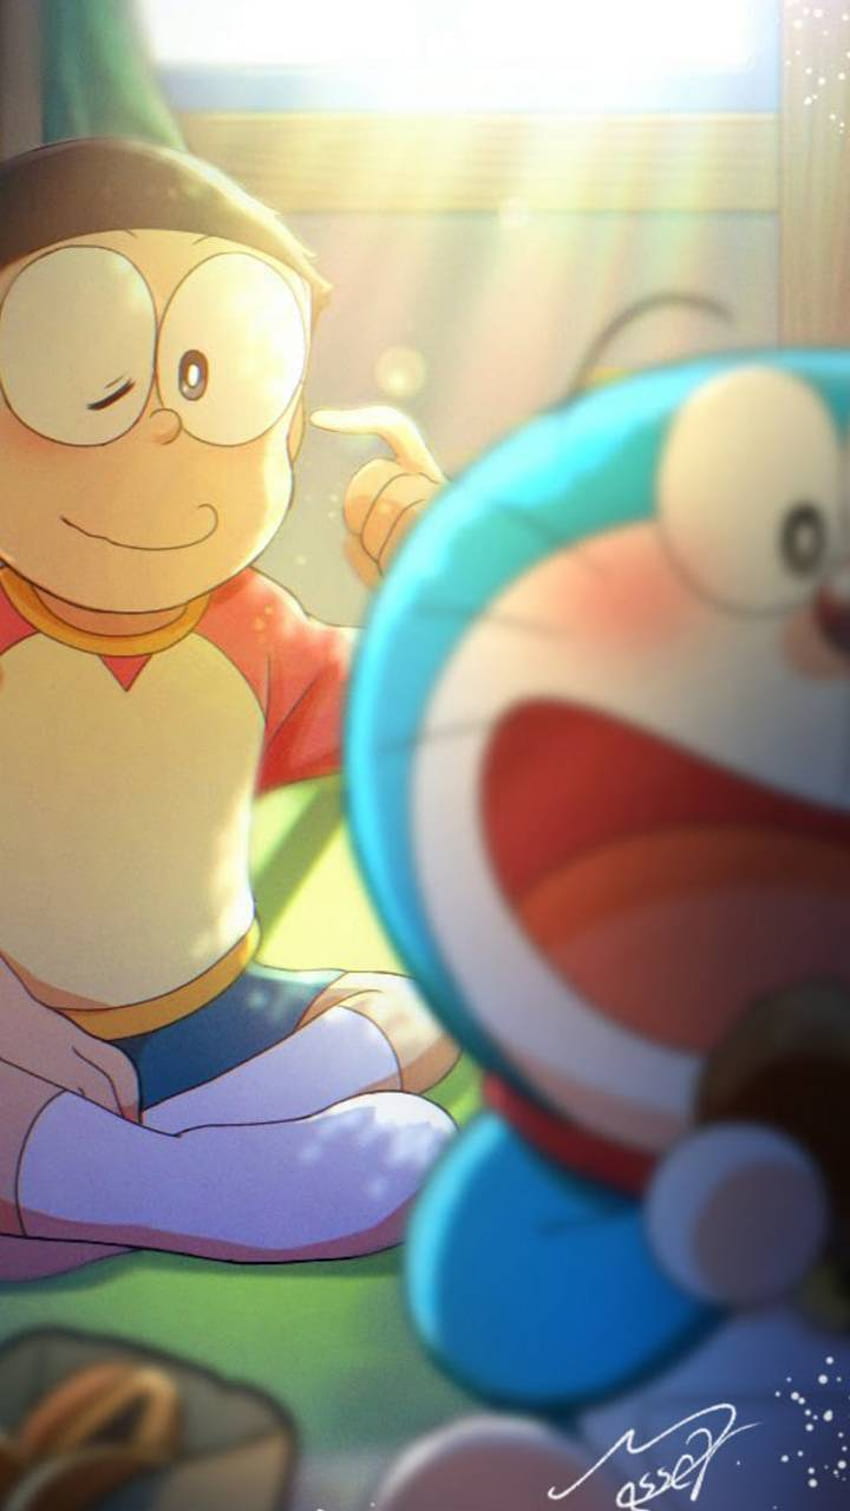 Hãy khám phá thế giới của Doraemon và Nobita qua Doraemon Nobita hình nền HD. Hình ảnh siêu nét và sắc nét này sẽ khiến cho bạn ngắm nghía màn hình trong thời gian dài mà không muốn rời mắt. Bạn sẽ được kết nối với thế giới phù hợp với cá tính của riêng mình với hình nền độc đáo này.